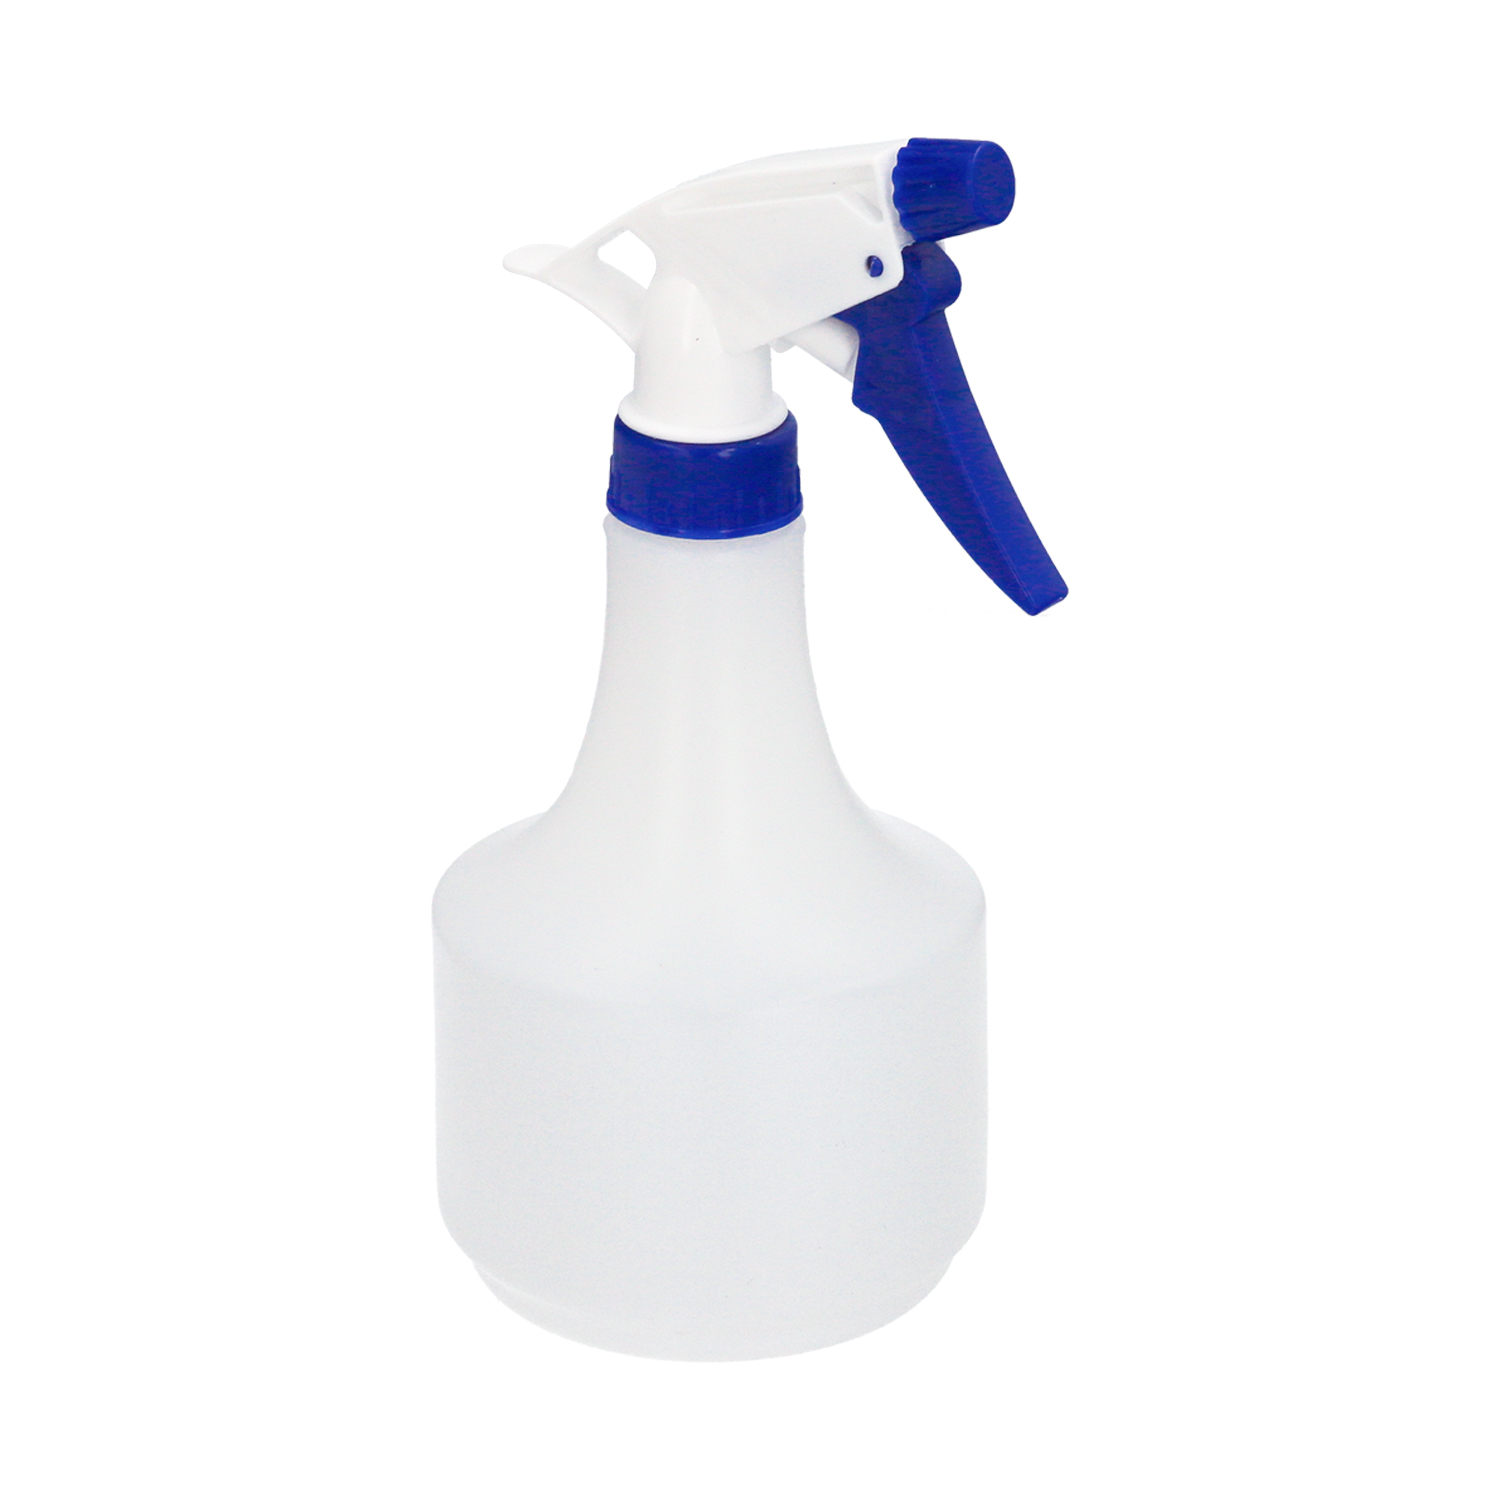 Pulverizador Agua 1 Litro. Spray Pulverizador Boquilla Ajustable, Botella  Spray Liquidos, Aceite, Al - Global Suministros Técnicos